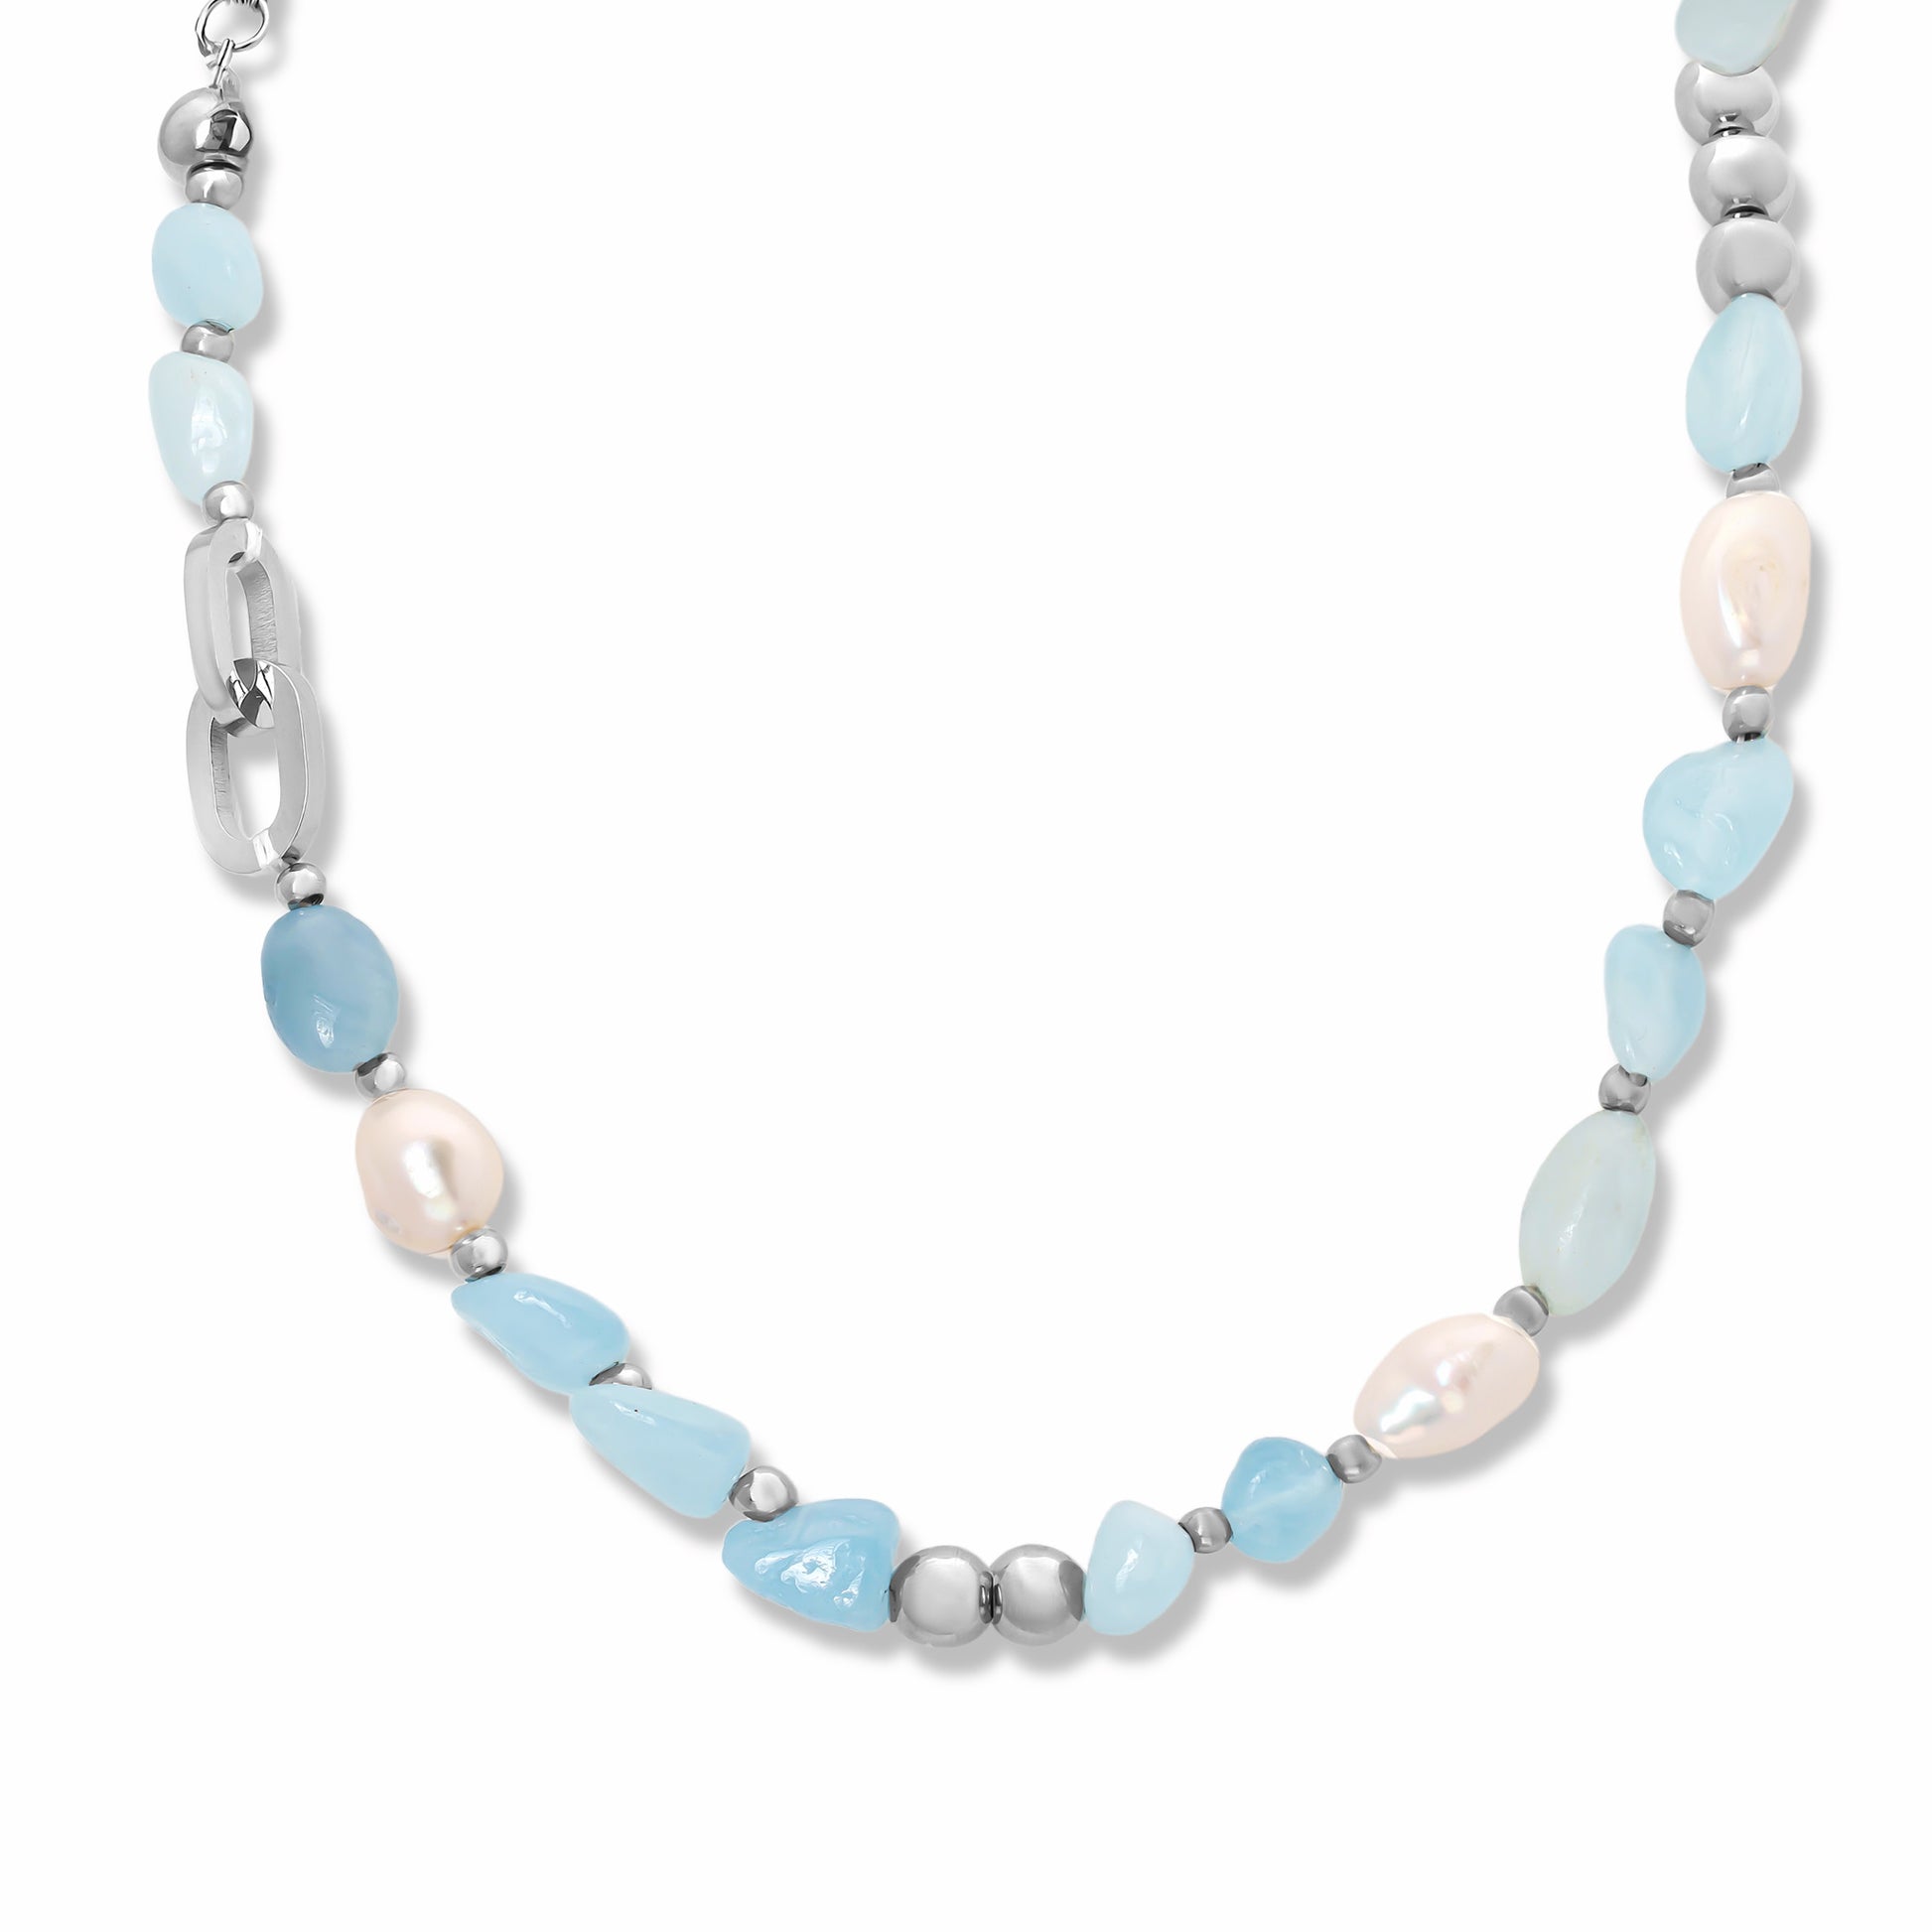 Close up image of Aquamarine Stone & Pearl Beaded Necklace on white background